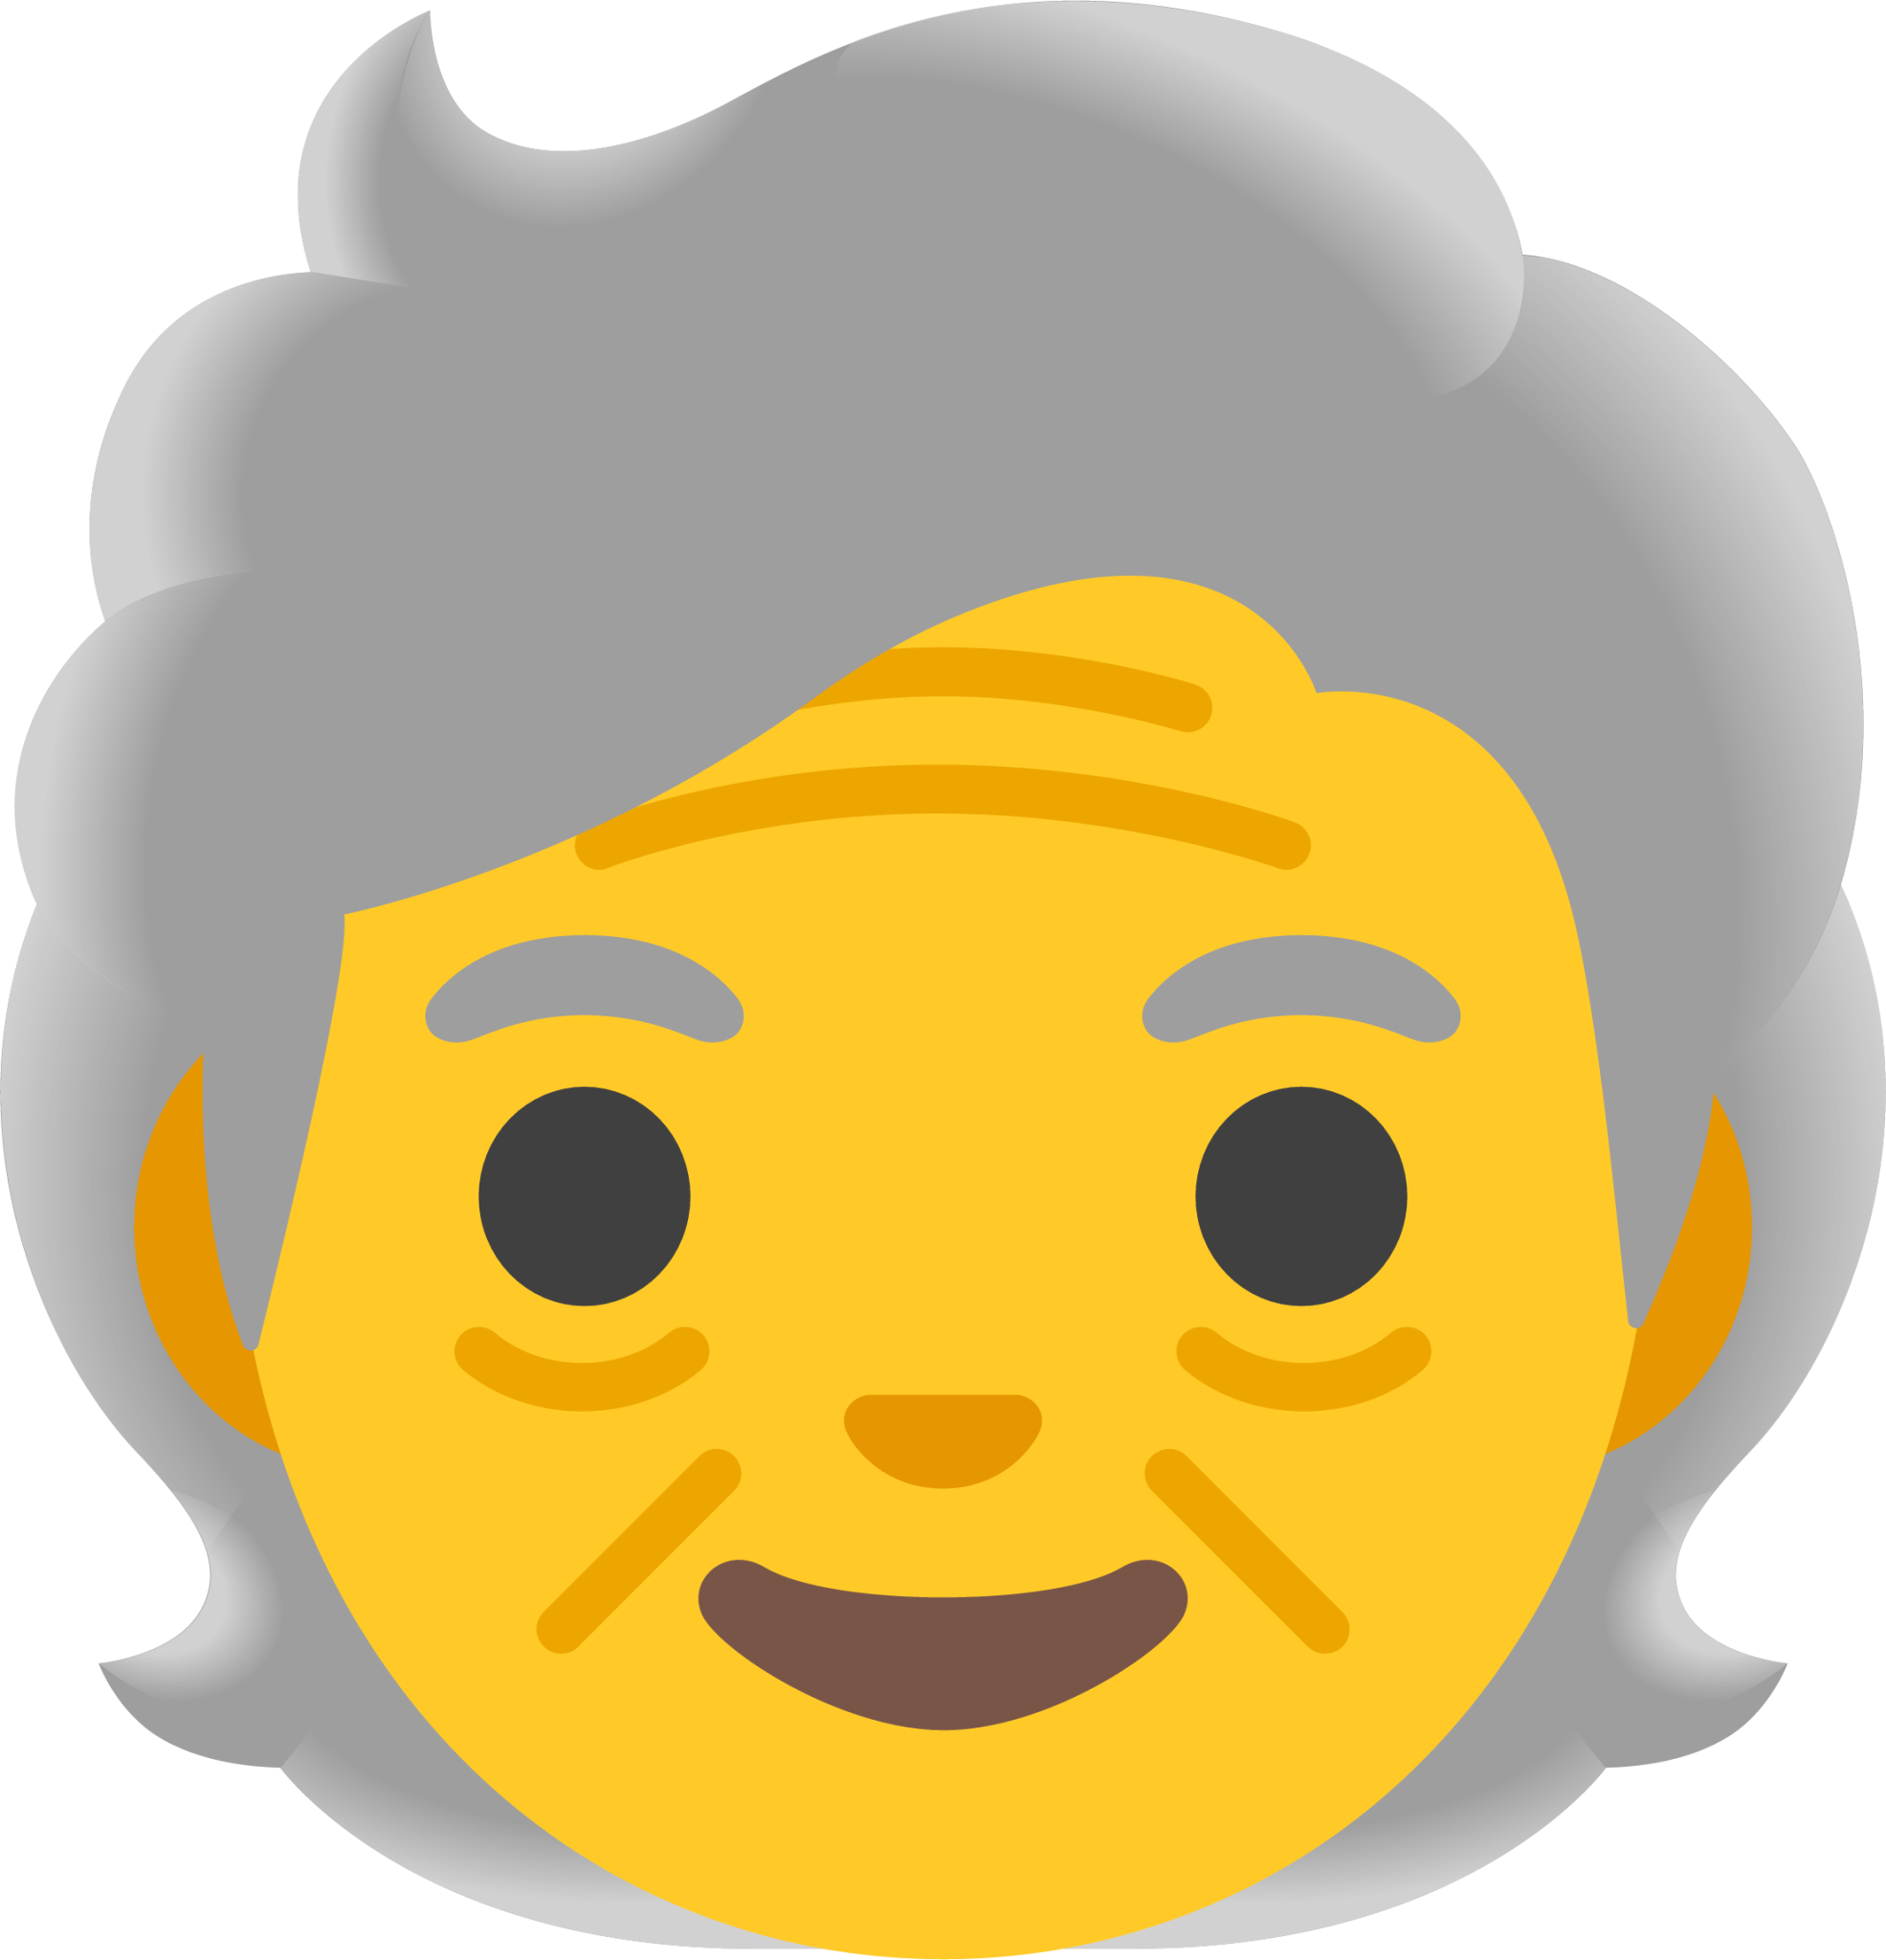 older adult emoji